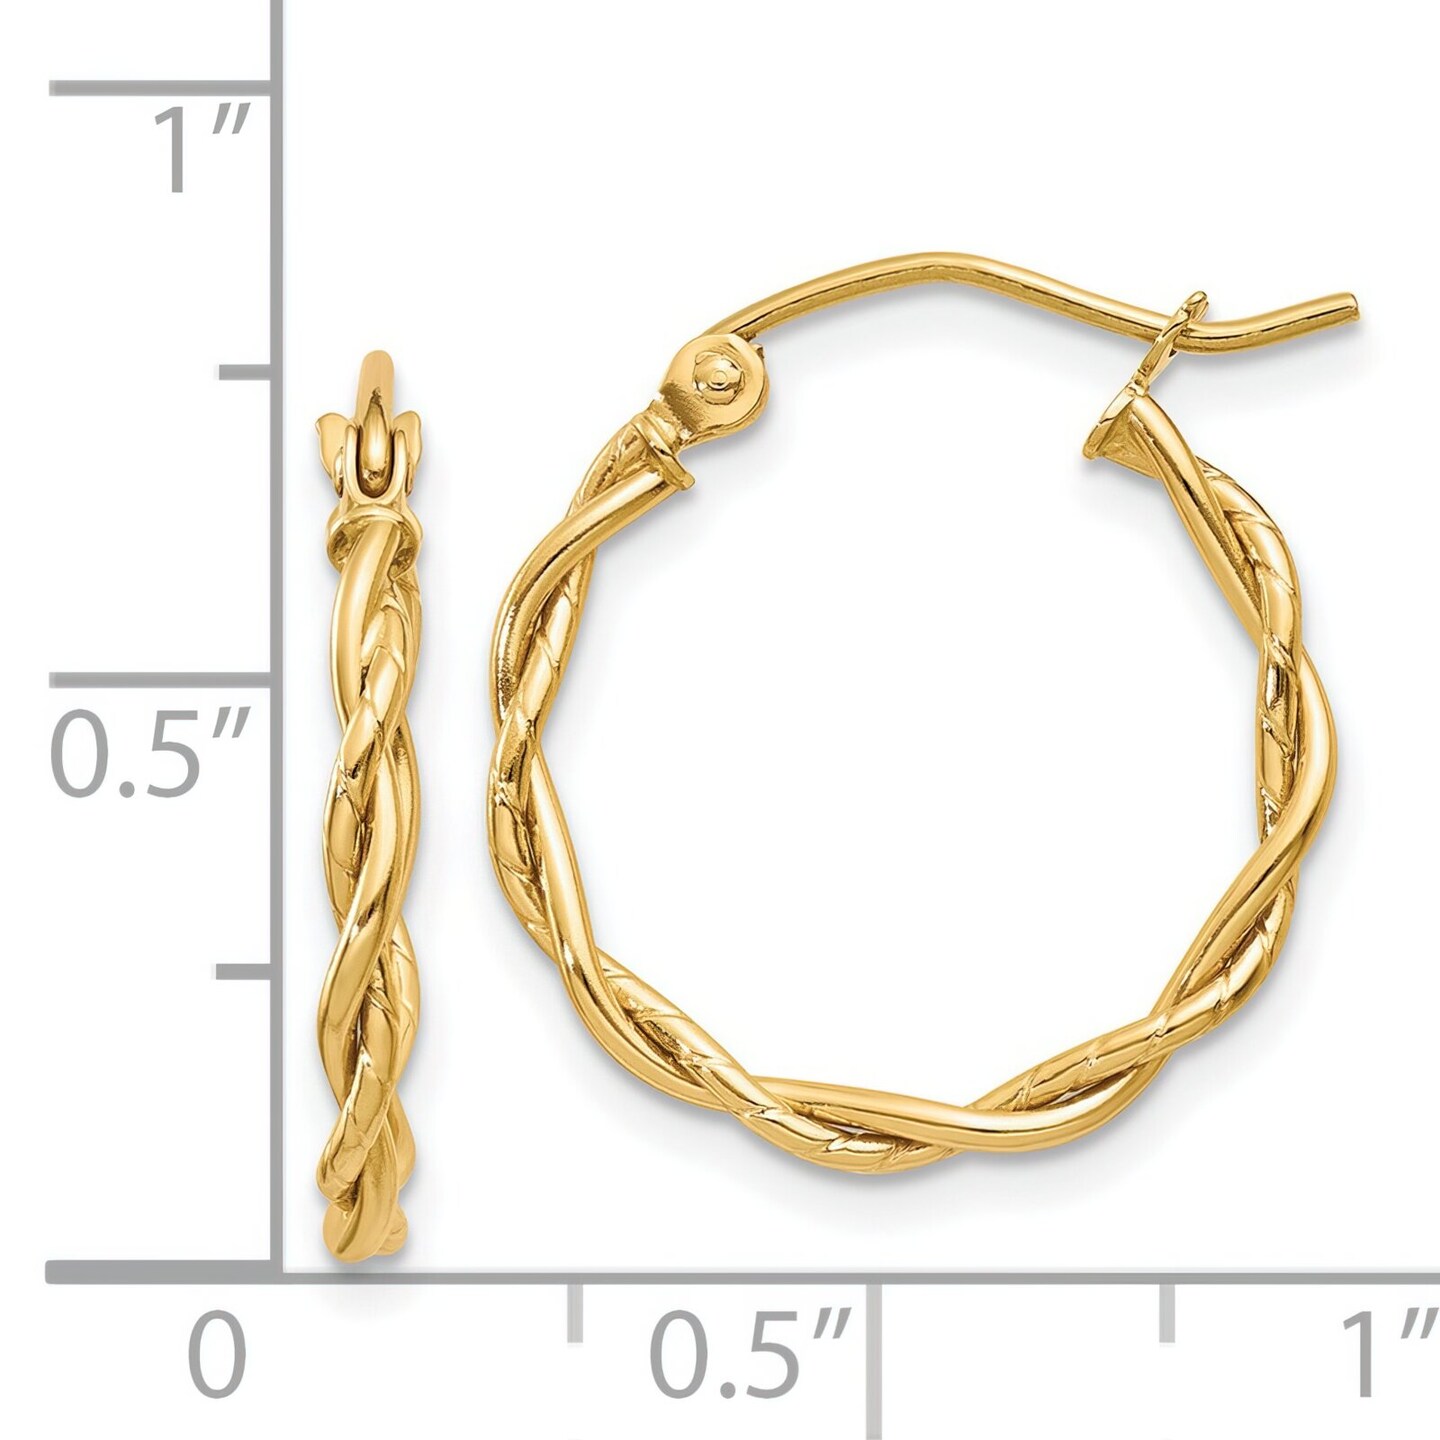 14K Yellow Gold Twisted Hoop Earrings Ear Jewelry 19.5mm x 2.25mm